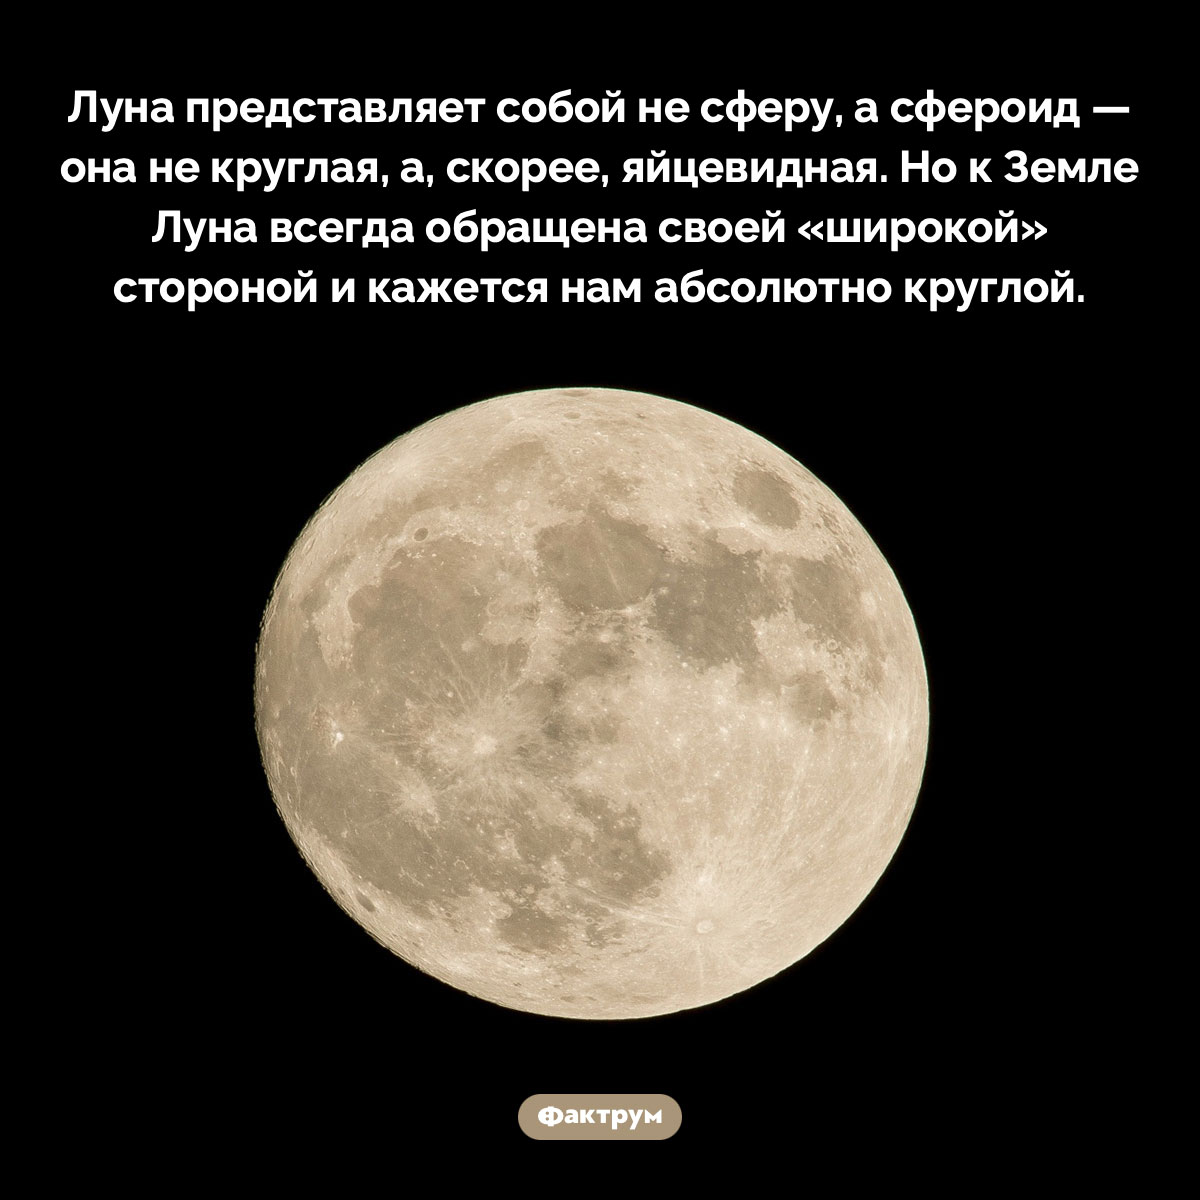 Луна похожа на яйцо. Луна представляет собой не сферу, а сфероид — она не круглая, а, скорее, яйцевидная. Но к Земле Луна всегда обращена своей «широкой» стороной и кажется нам абсолютно круглой.